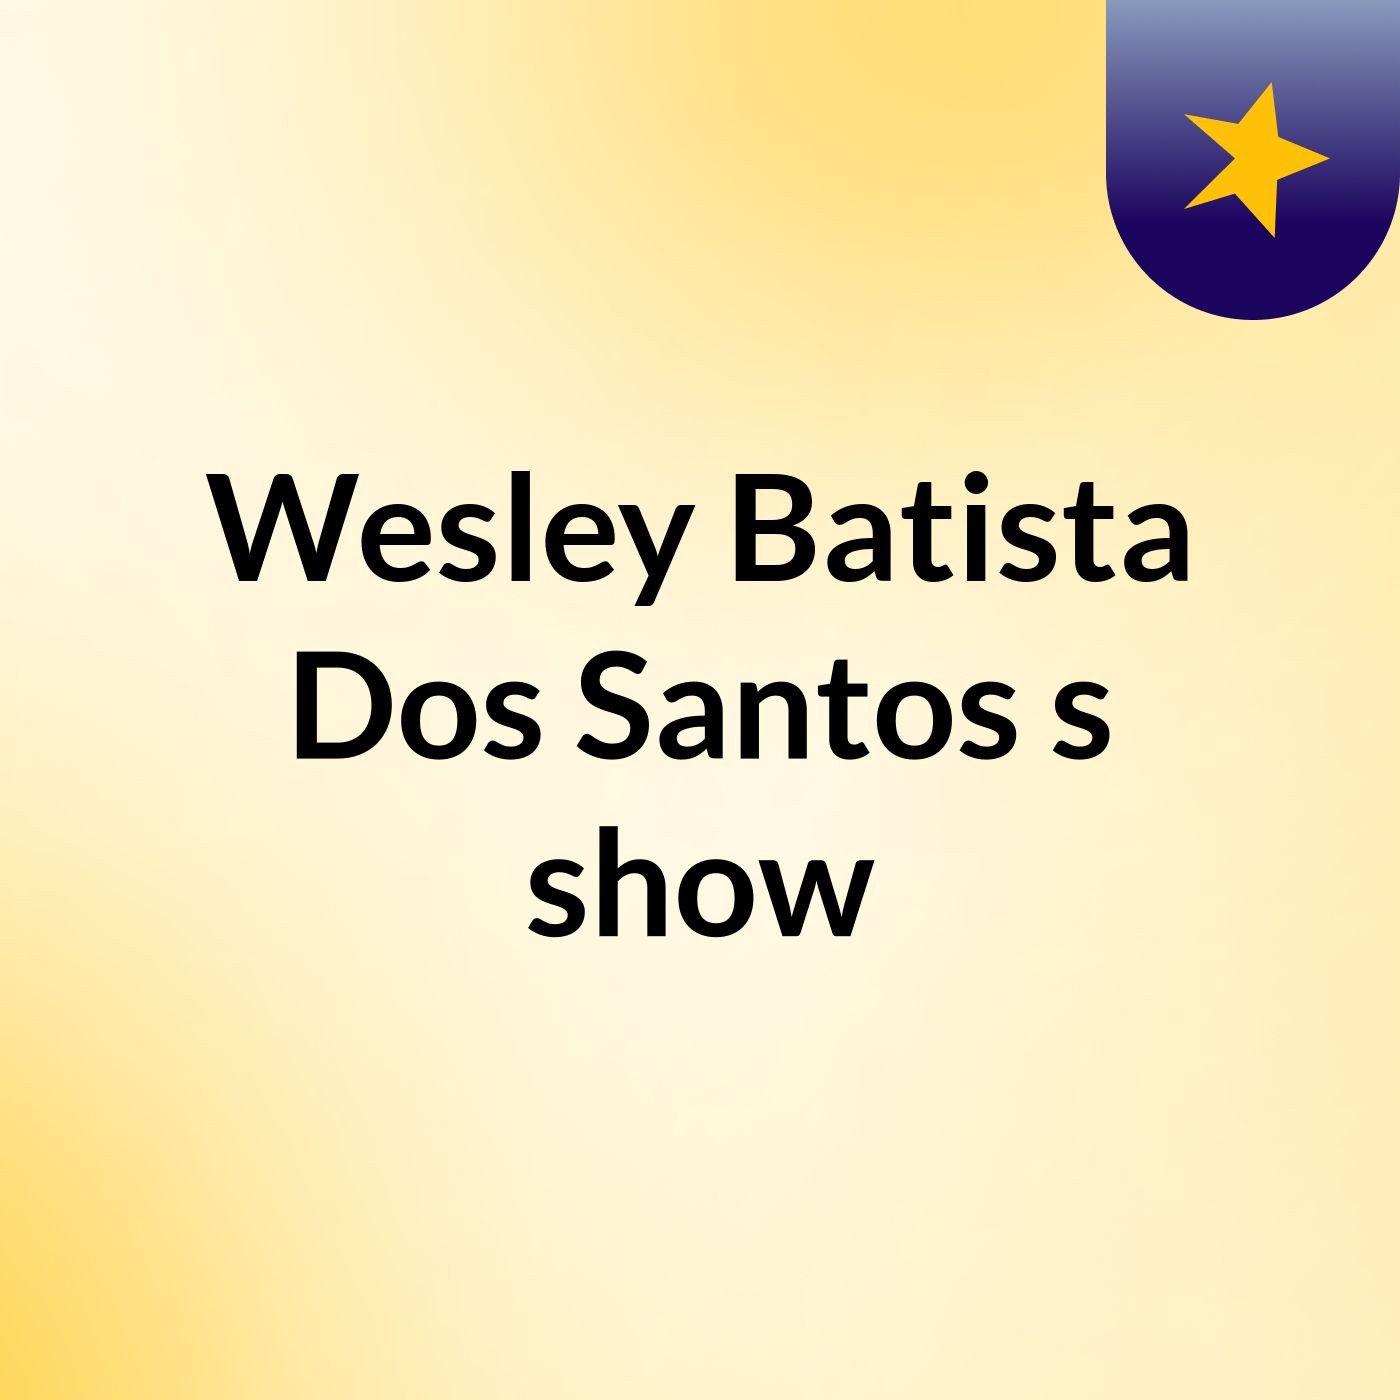 Wesley Batista Dos Santos's show